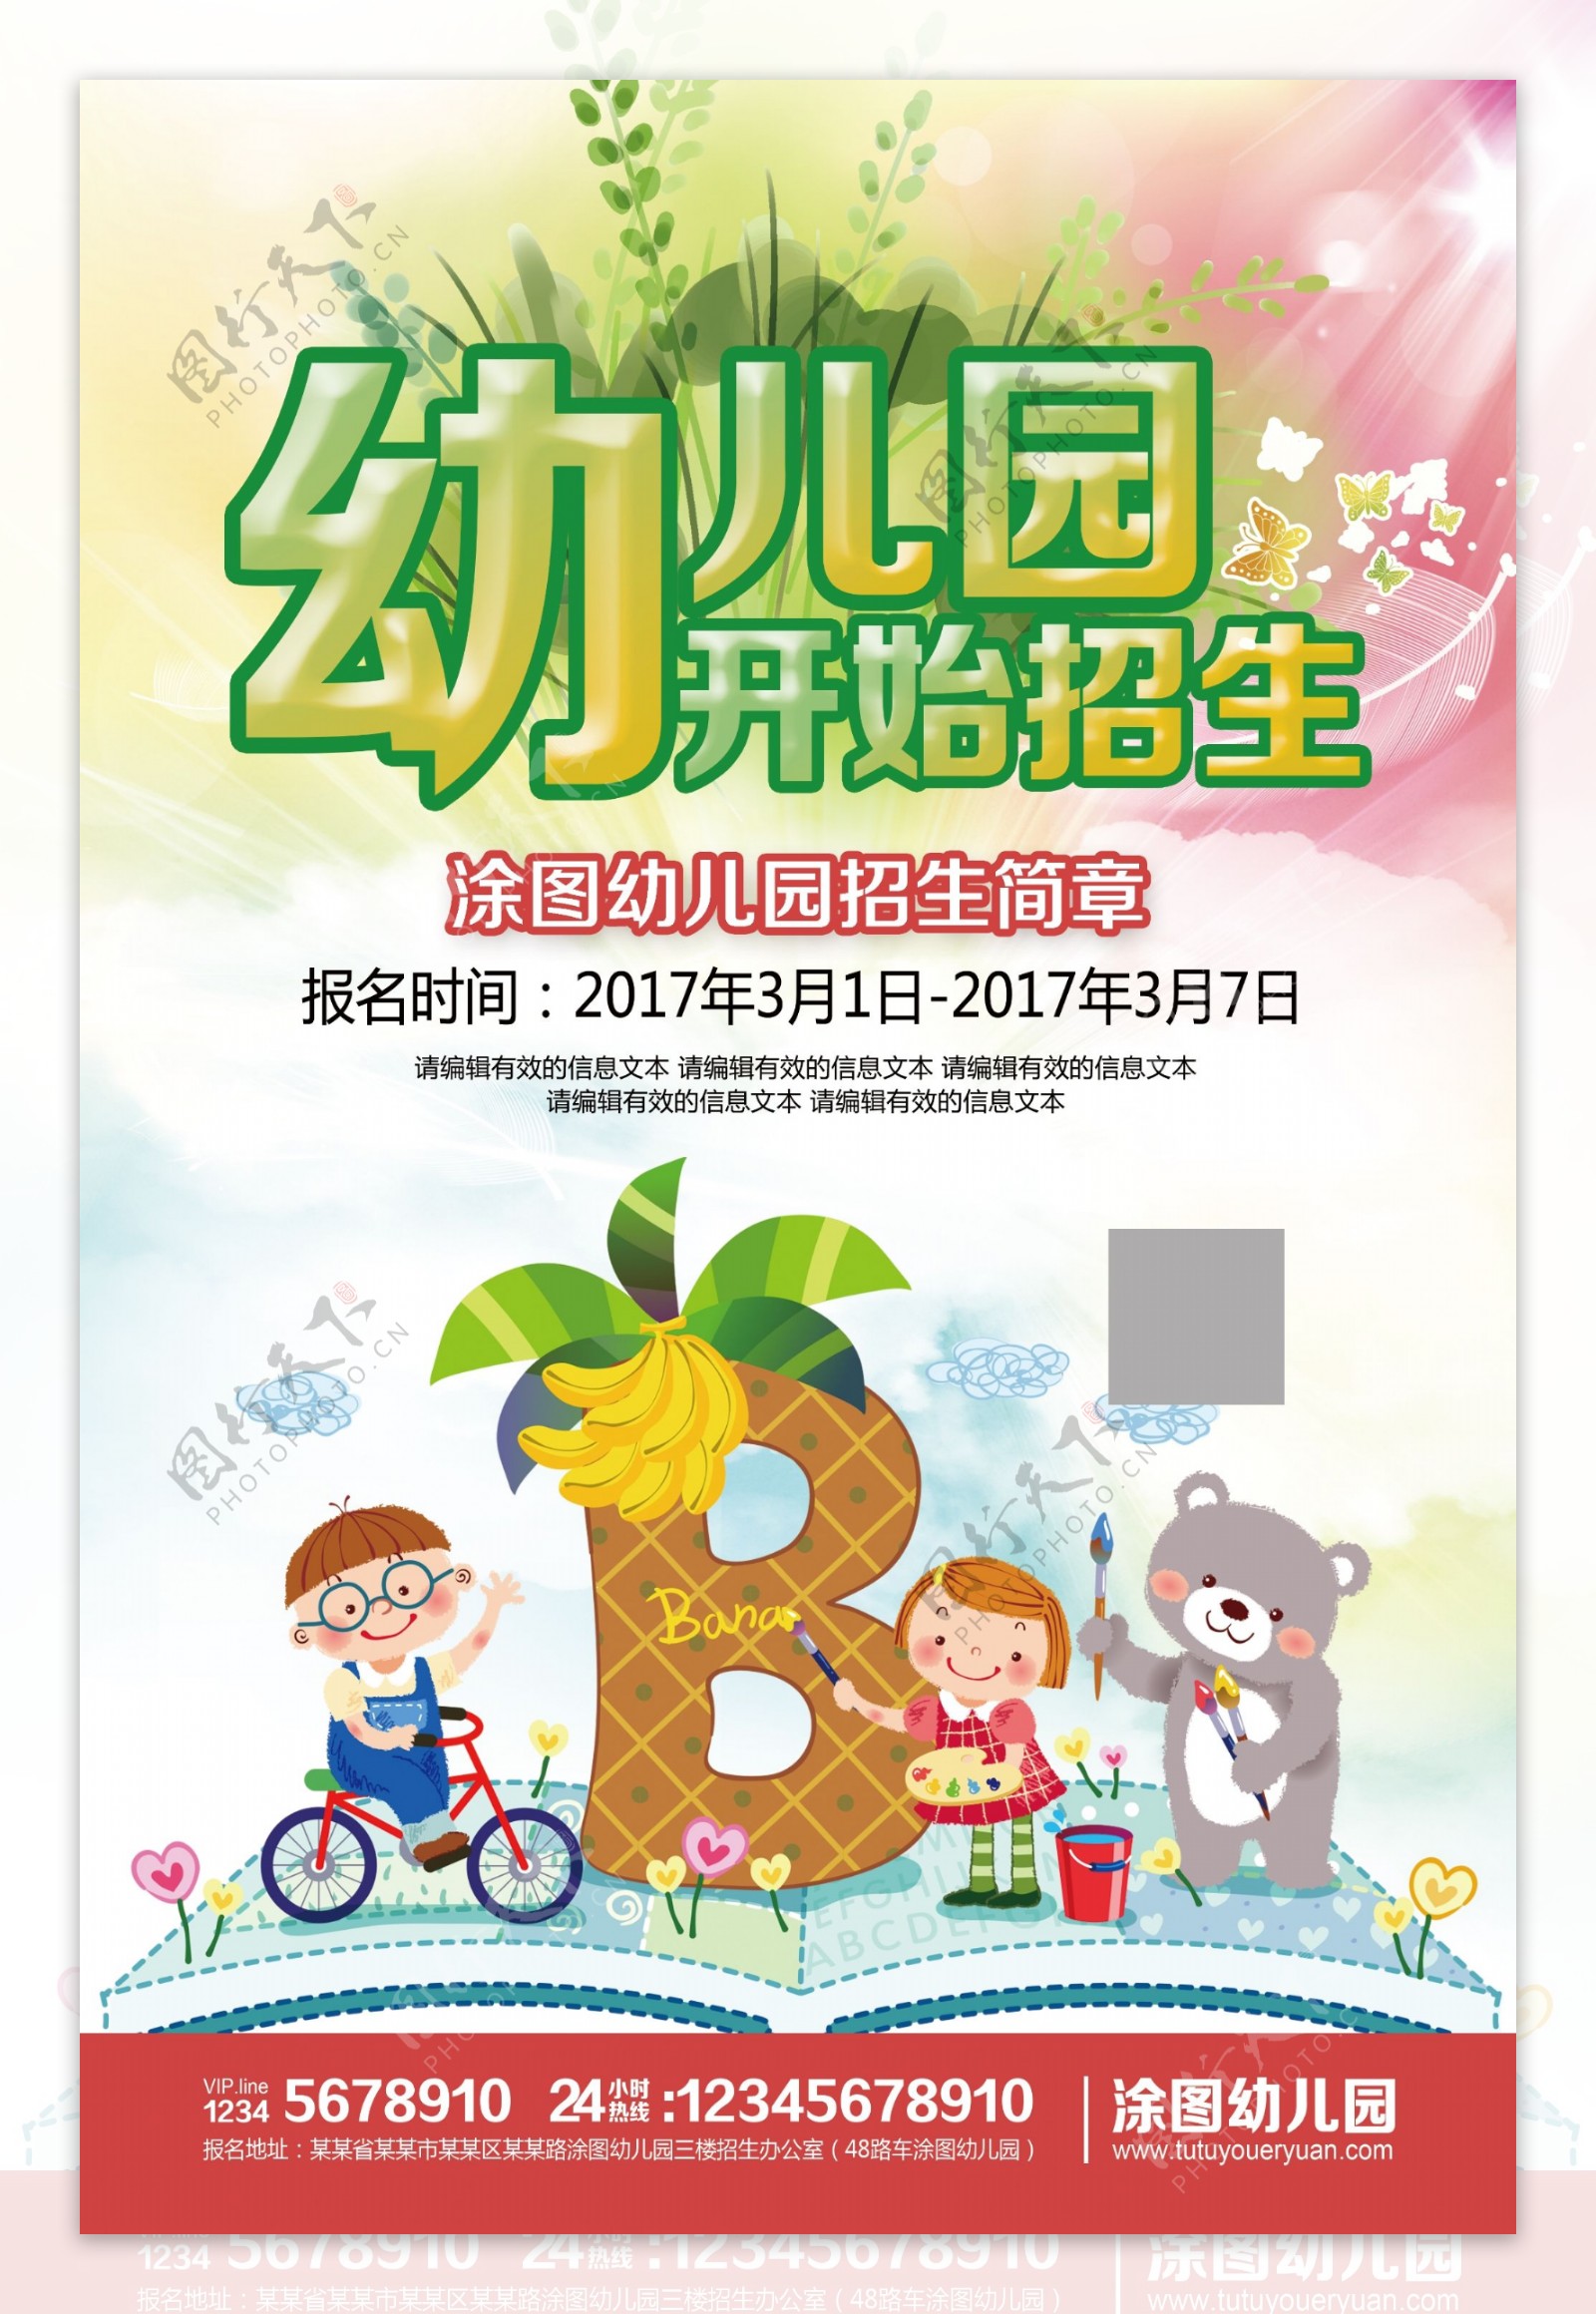 清新卡通幼儿园招生海报设计